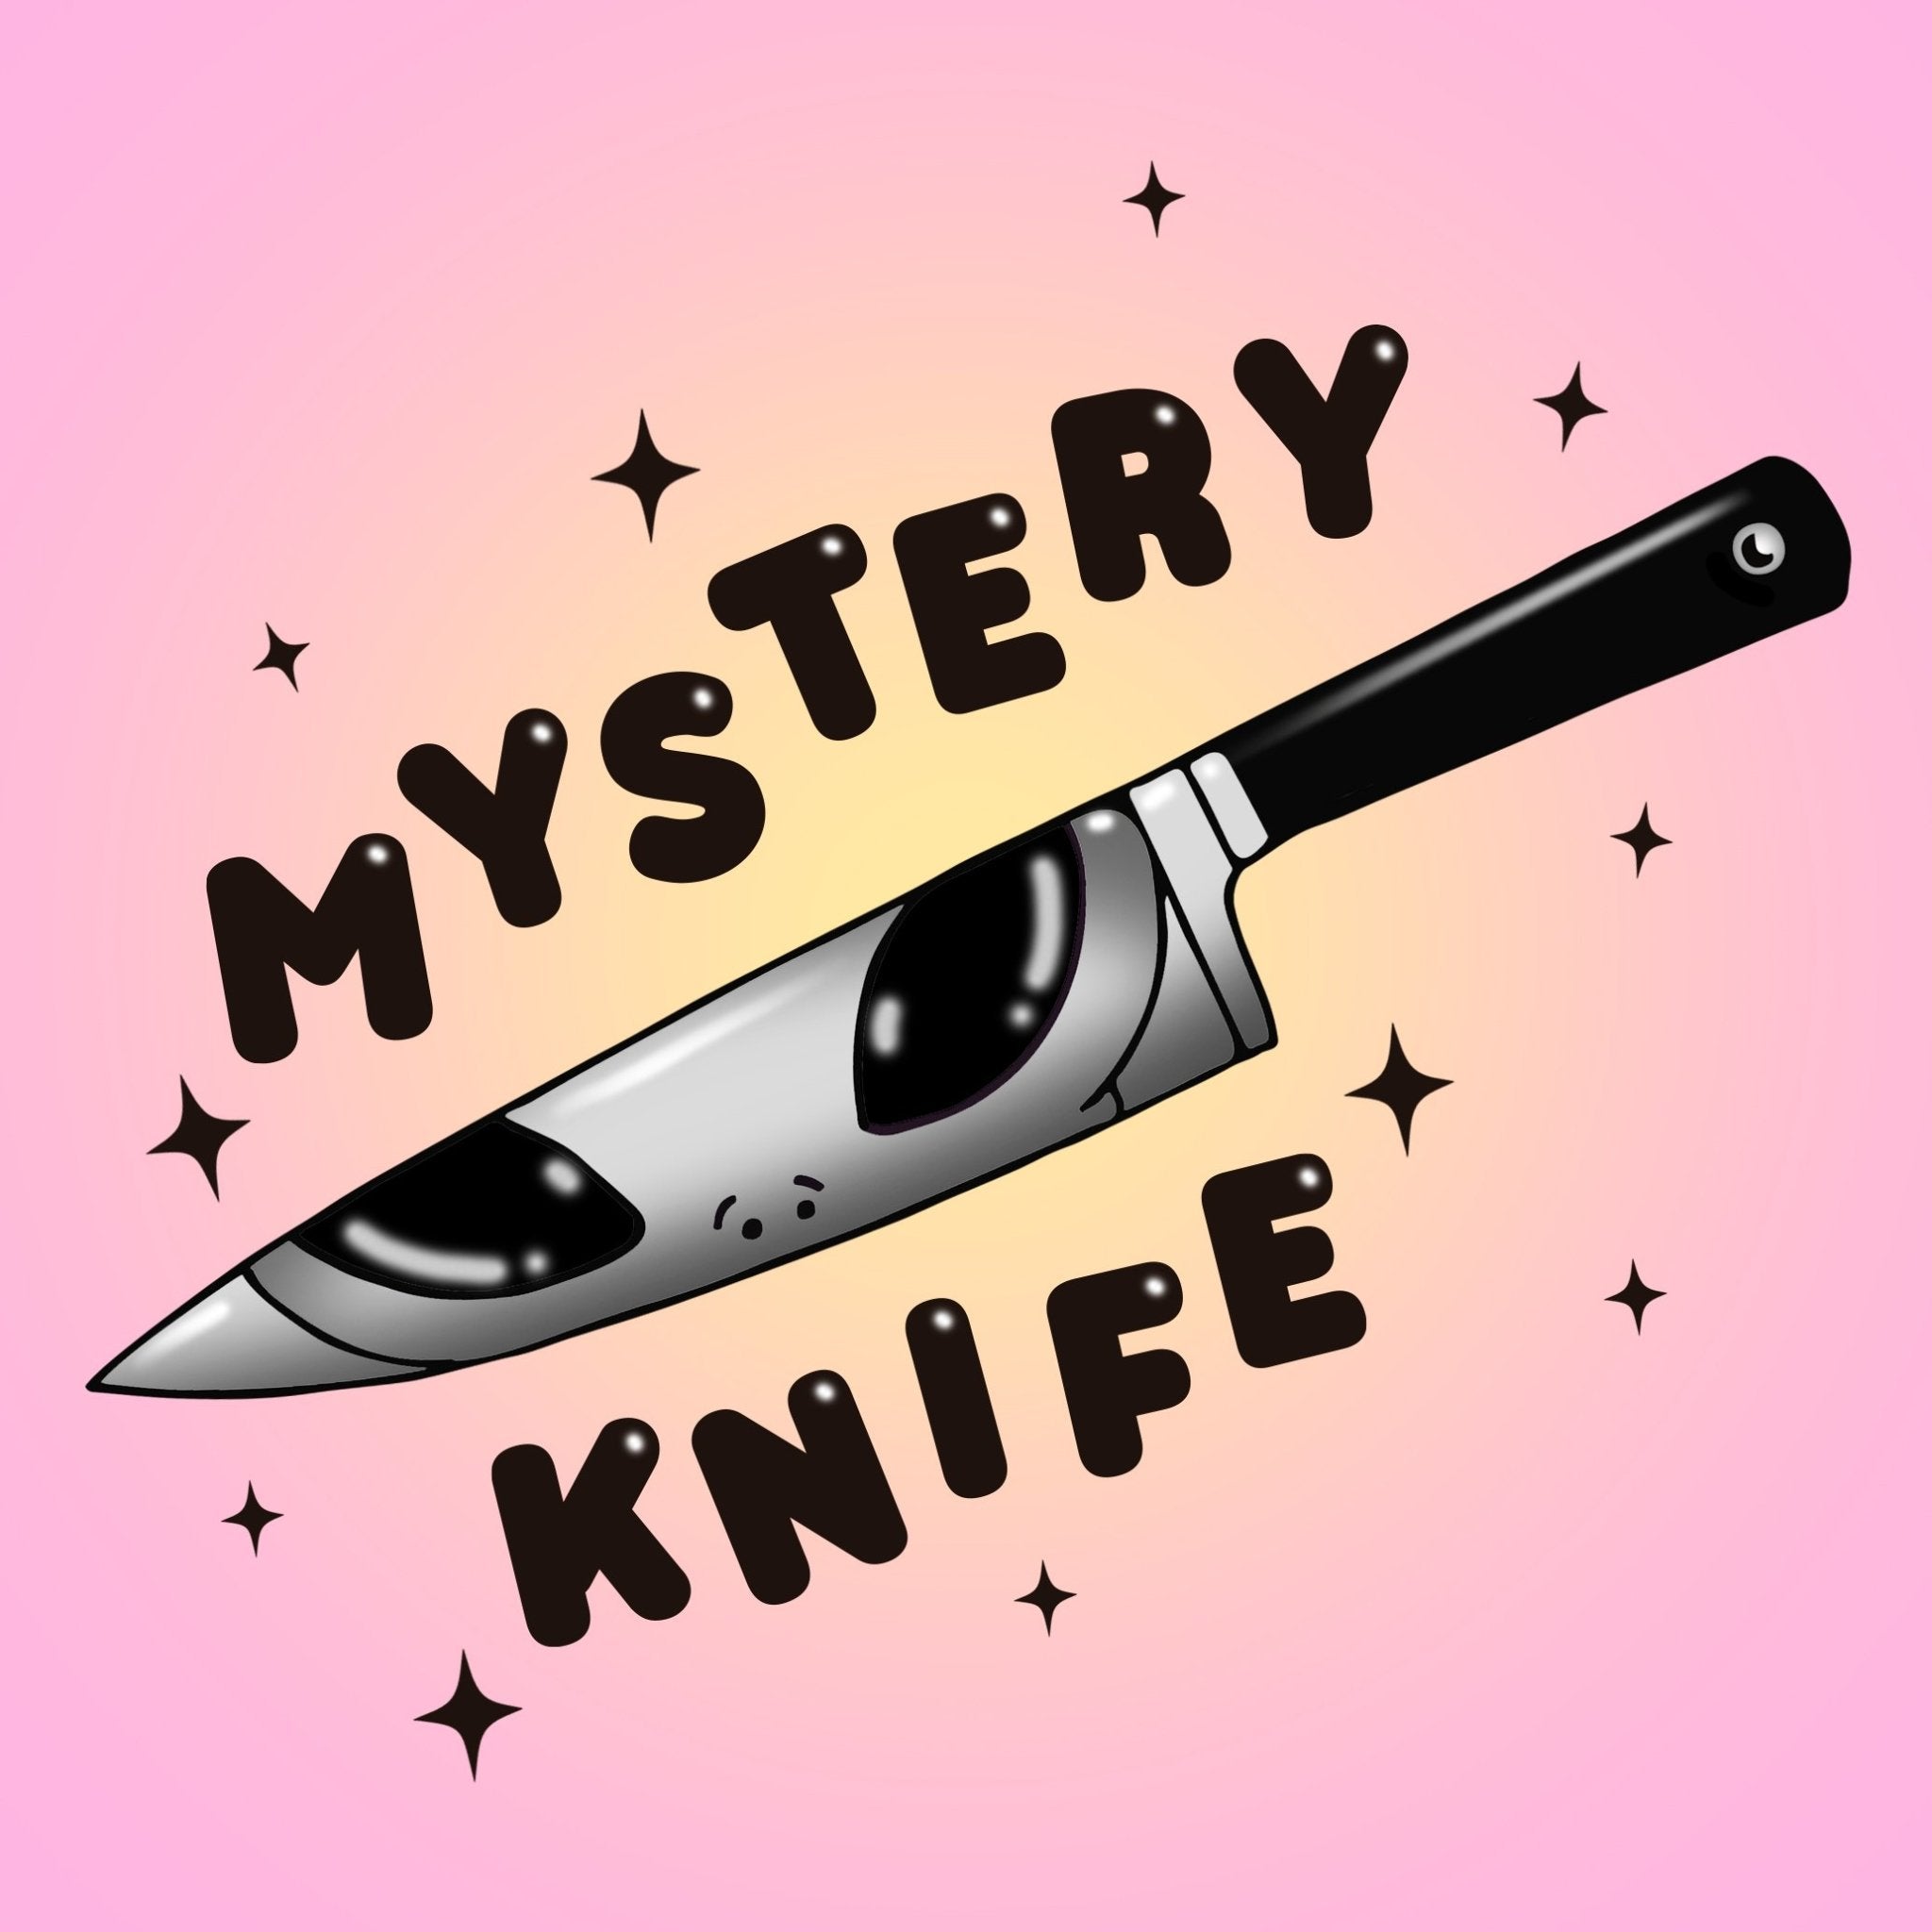 Ennata OTF Knuckle Knife – Blades For Babes